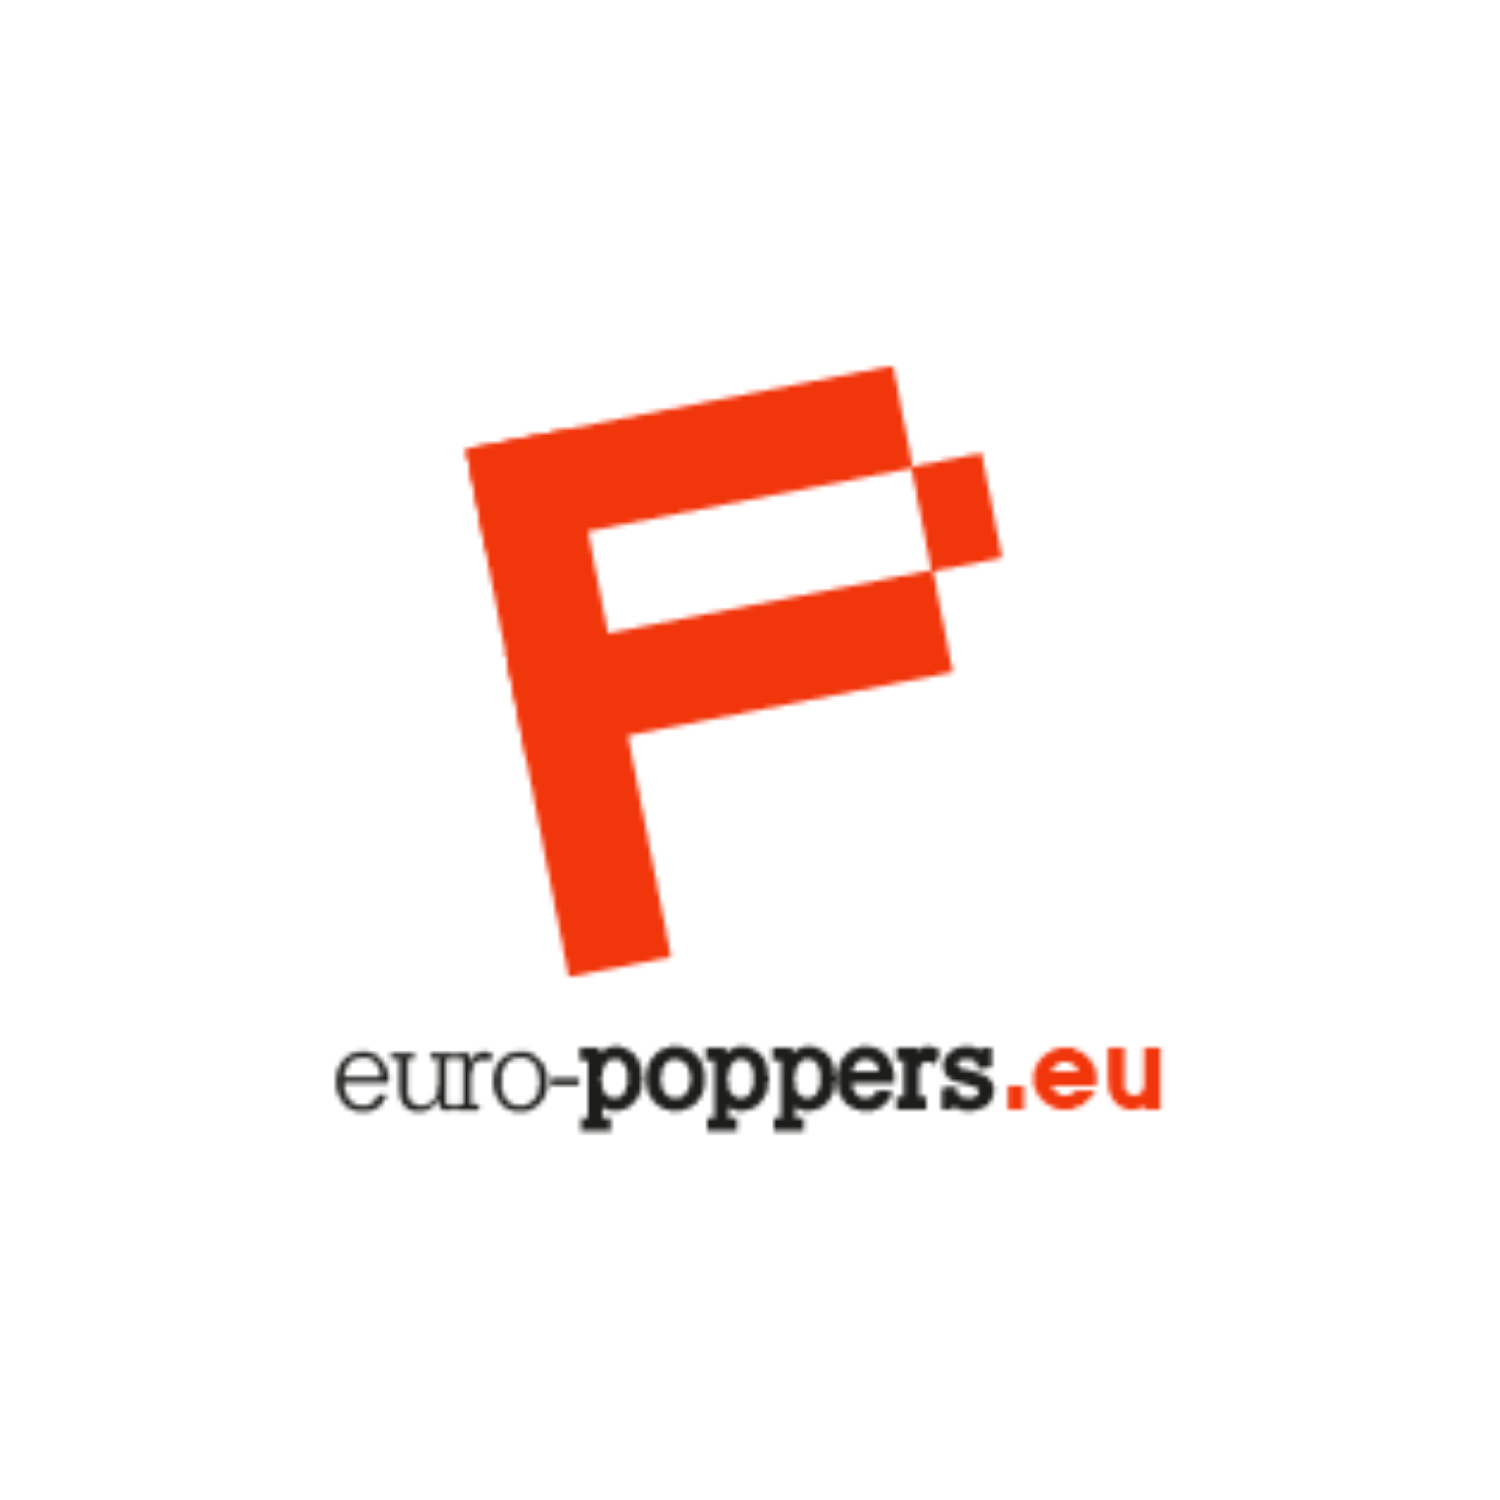 Servicio al Cliente - Eva de Euro Poppers